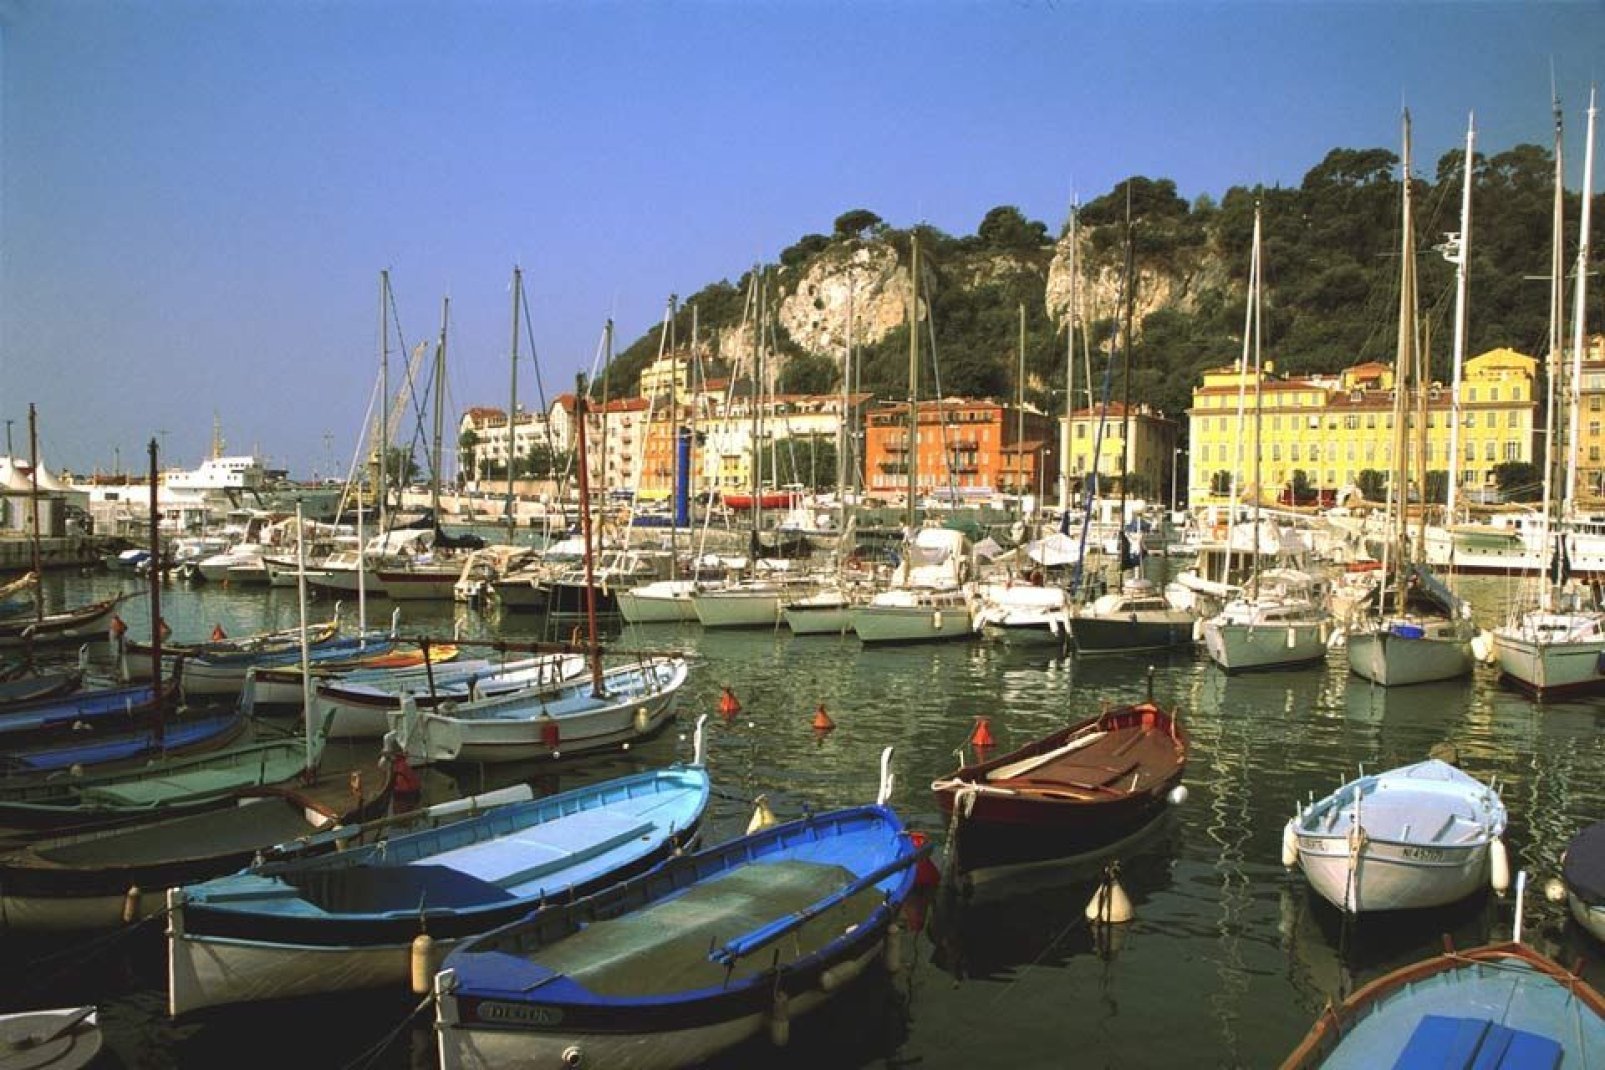 Il porto di Nizza ospita le imbarcazioni da diporto; qui è possibile osservare le famose "pointus", imbarcazioni tradizionali di pescatori, simbolo del Mediterraneo.